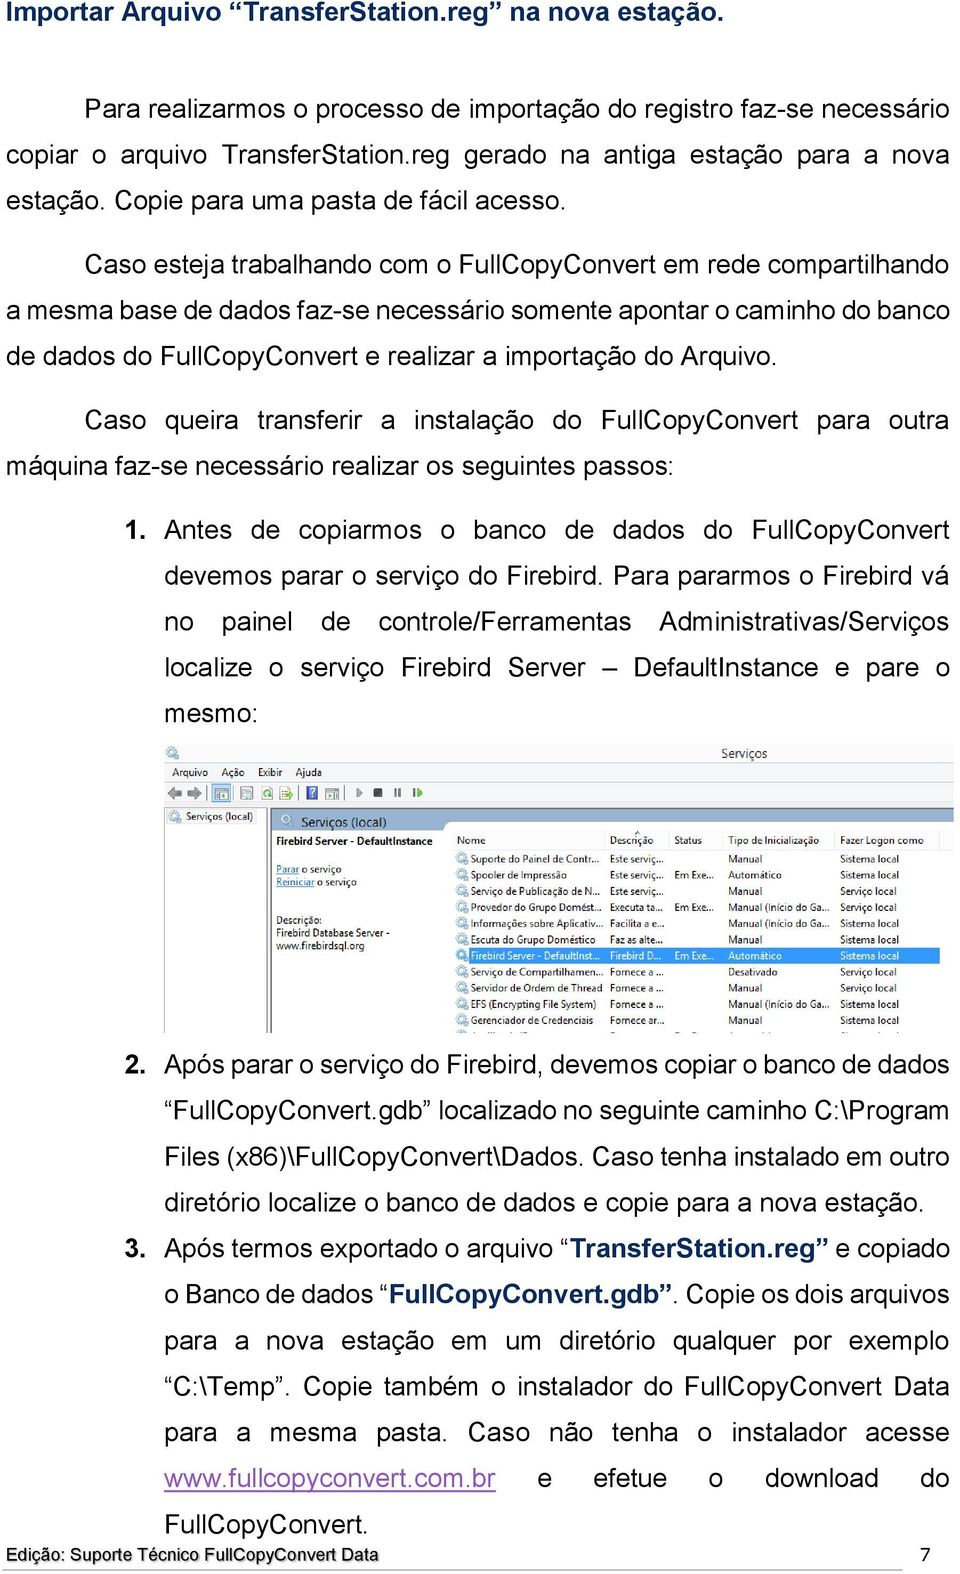 Caso esteja trabalhando com o FullCopyConvert em rede compartilhando a mesma base de dados faz-se necessário somente apontar o caminho do banco de dados do FullCopyConvert e realizar a importação do